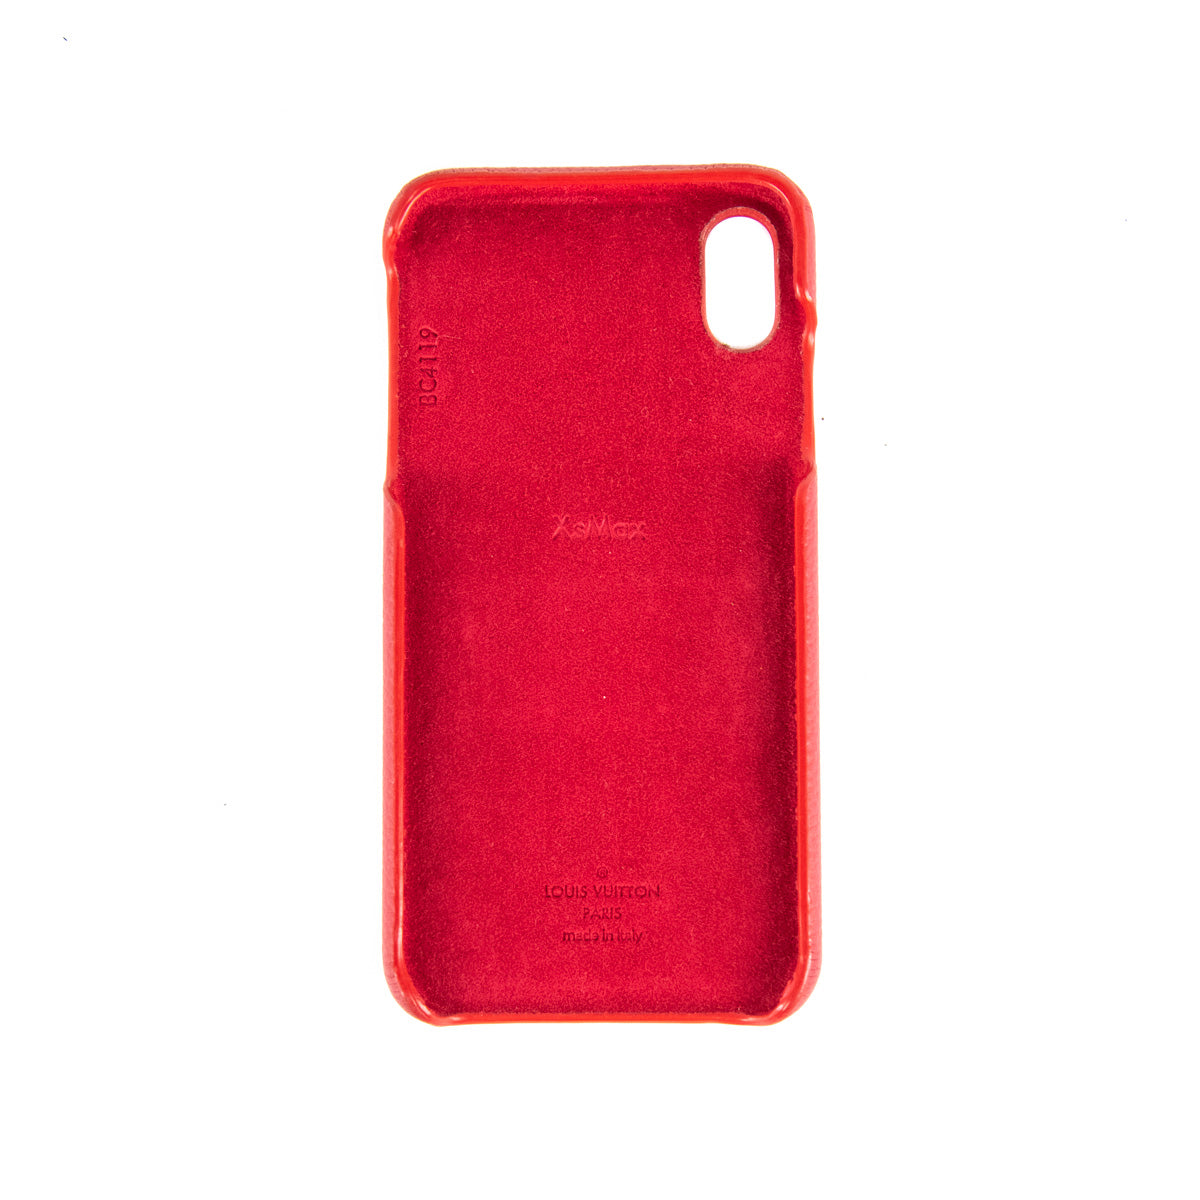 x/xs Louis Vuitton Iphone case